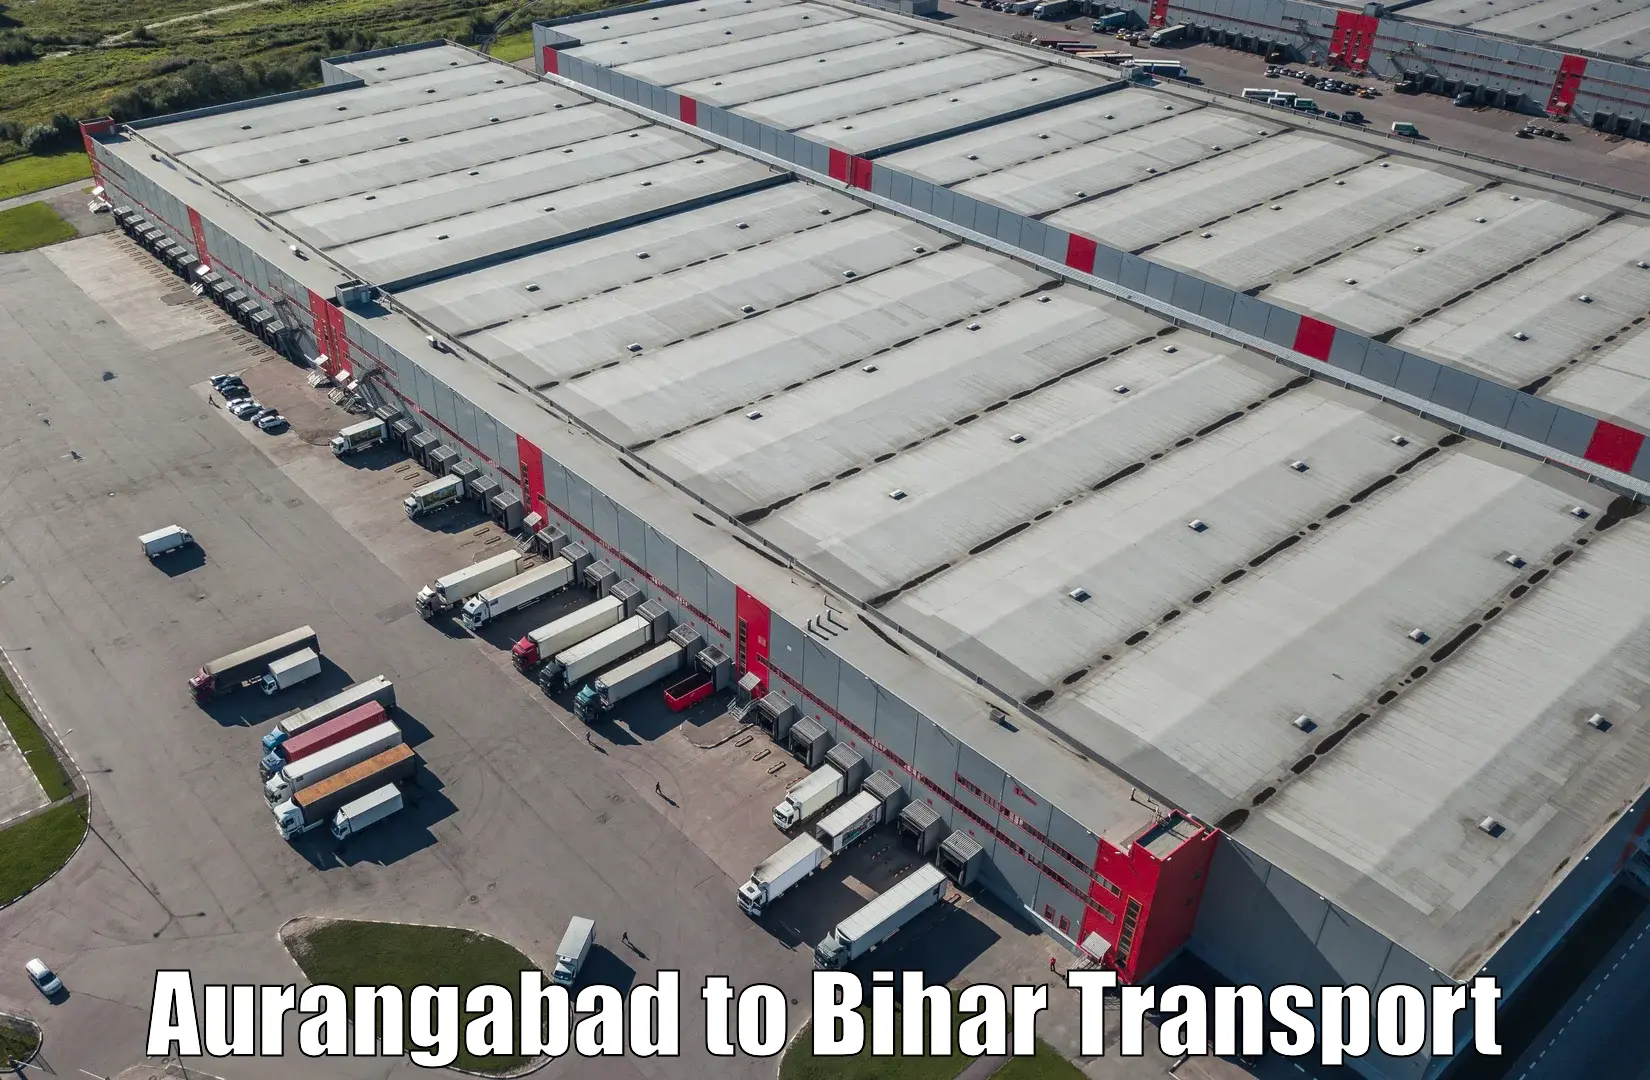 Daily transport service Aurangabad to Maheshkhunt